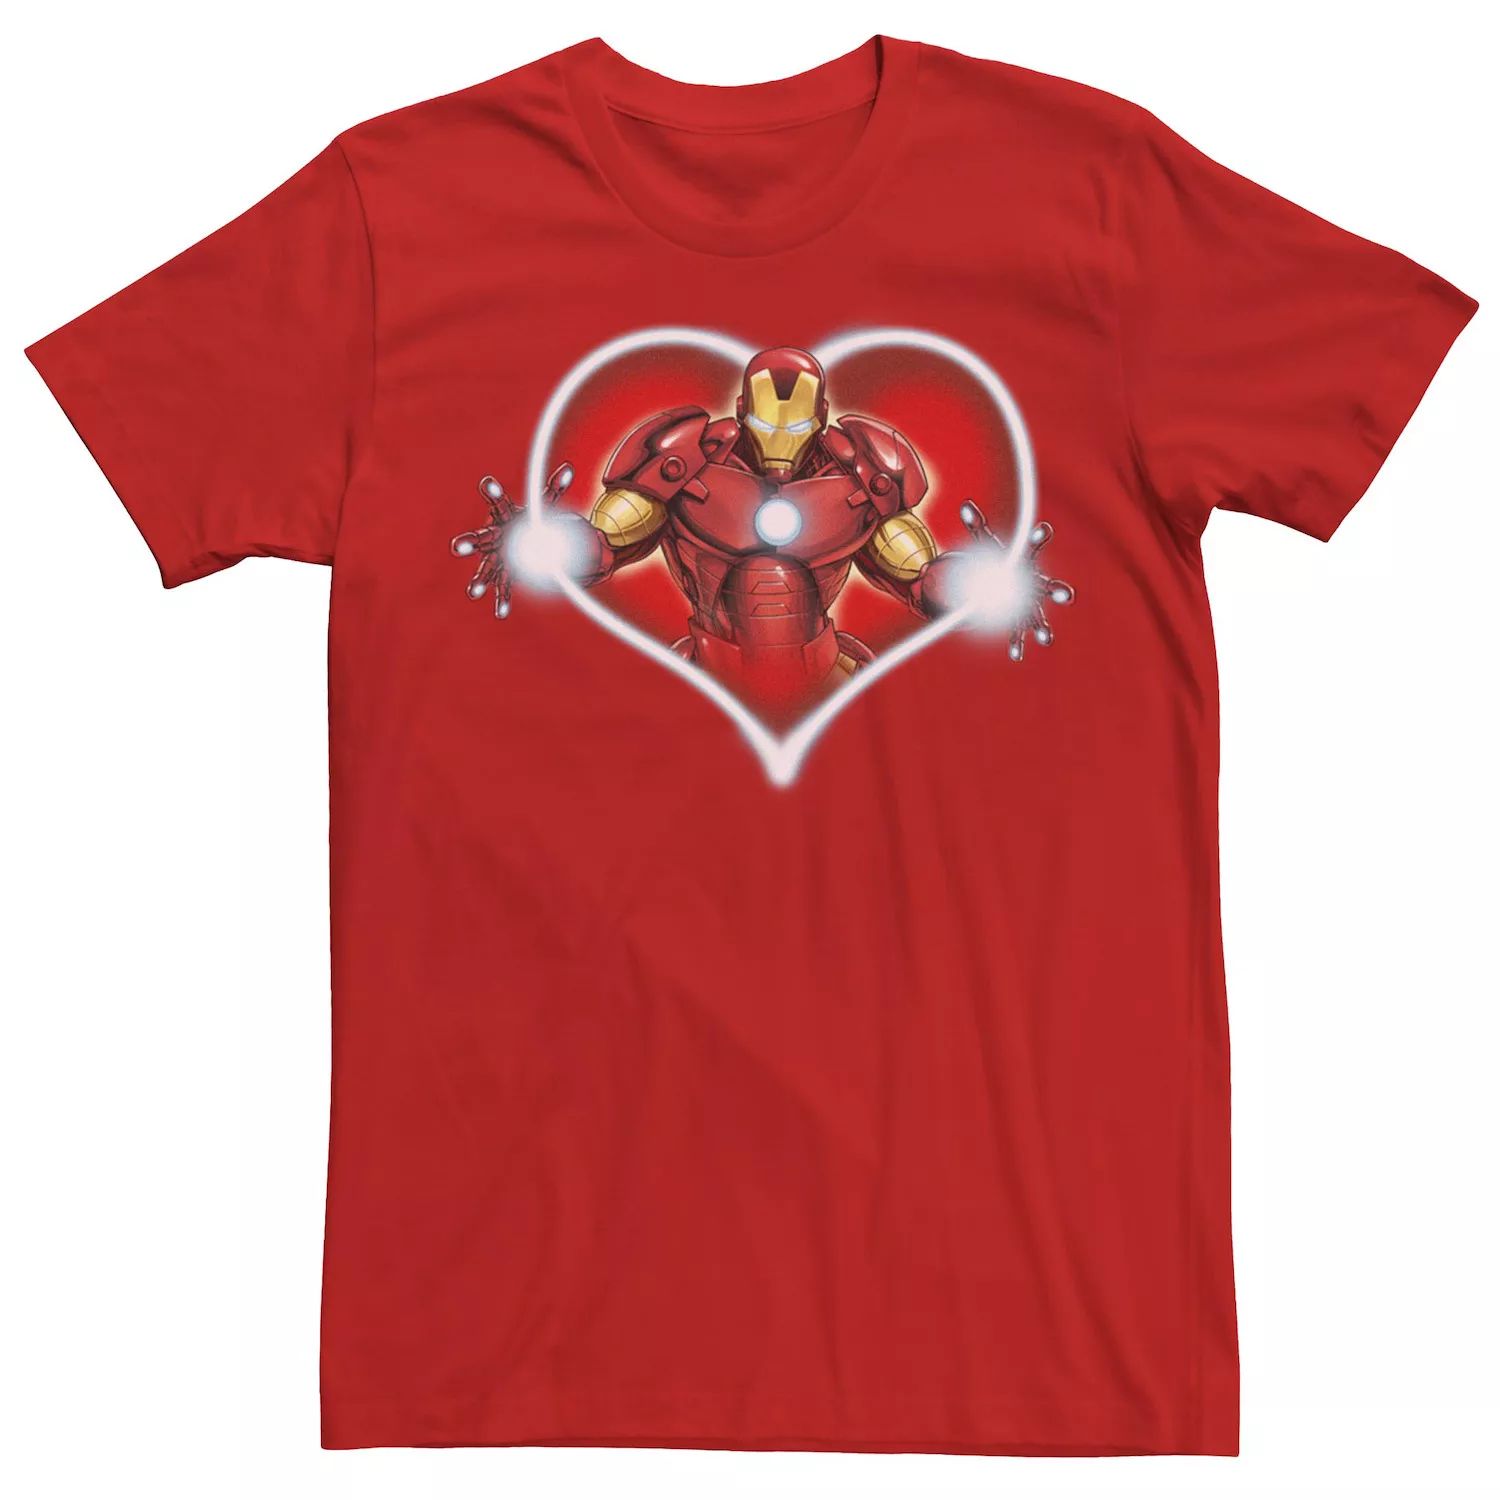 Мужская футболка Marvel Iron Man Arc Reactor Heart с портретом Licensed Character мужская футболка marvel iron man arc reactor heart с портретом licensed character